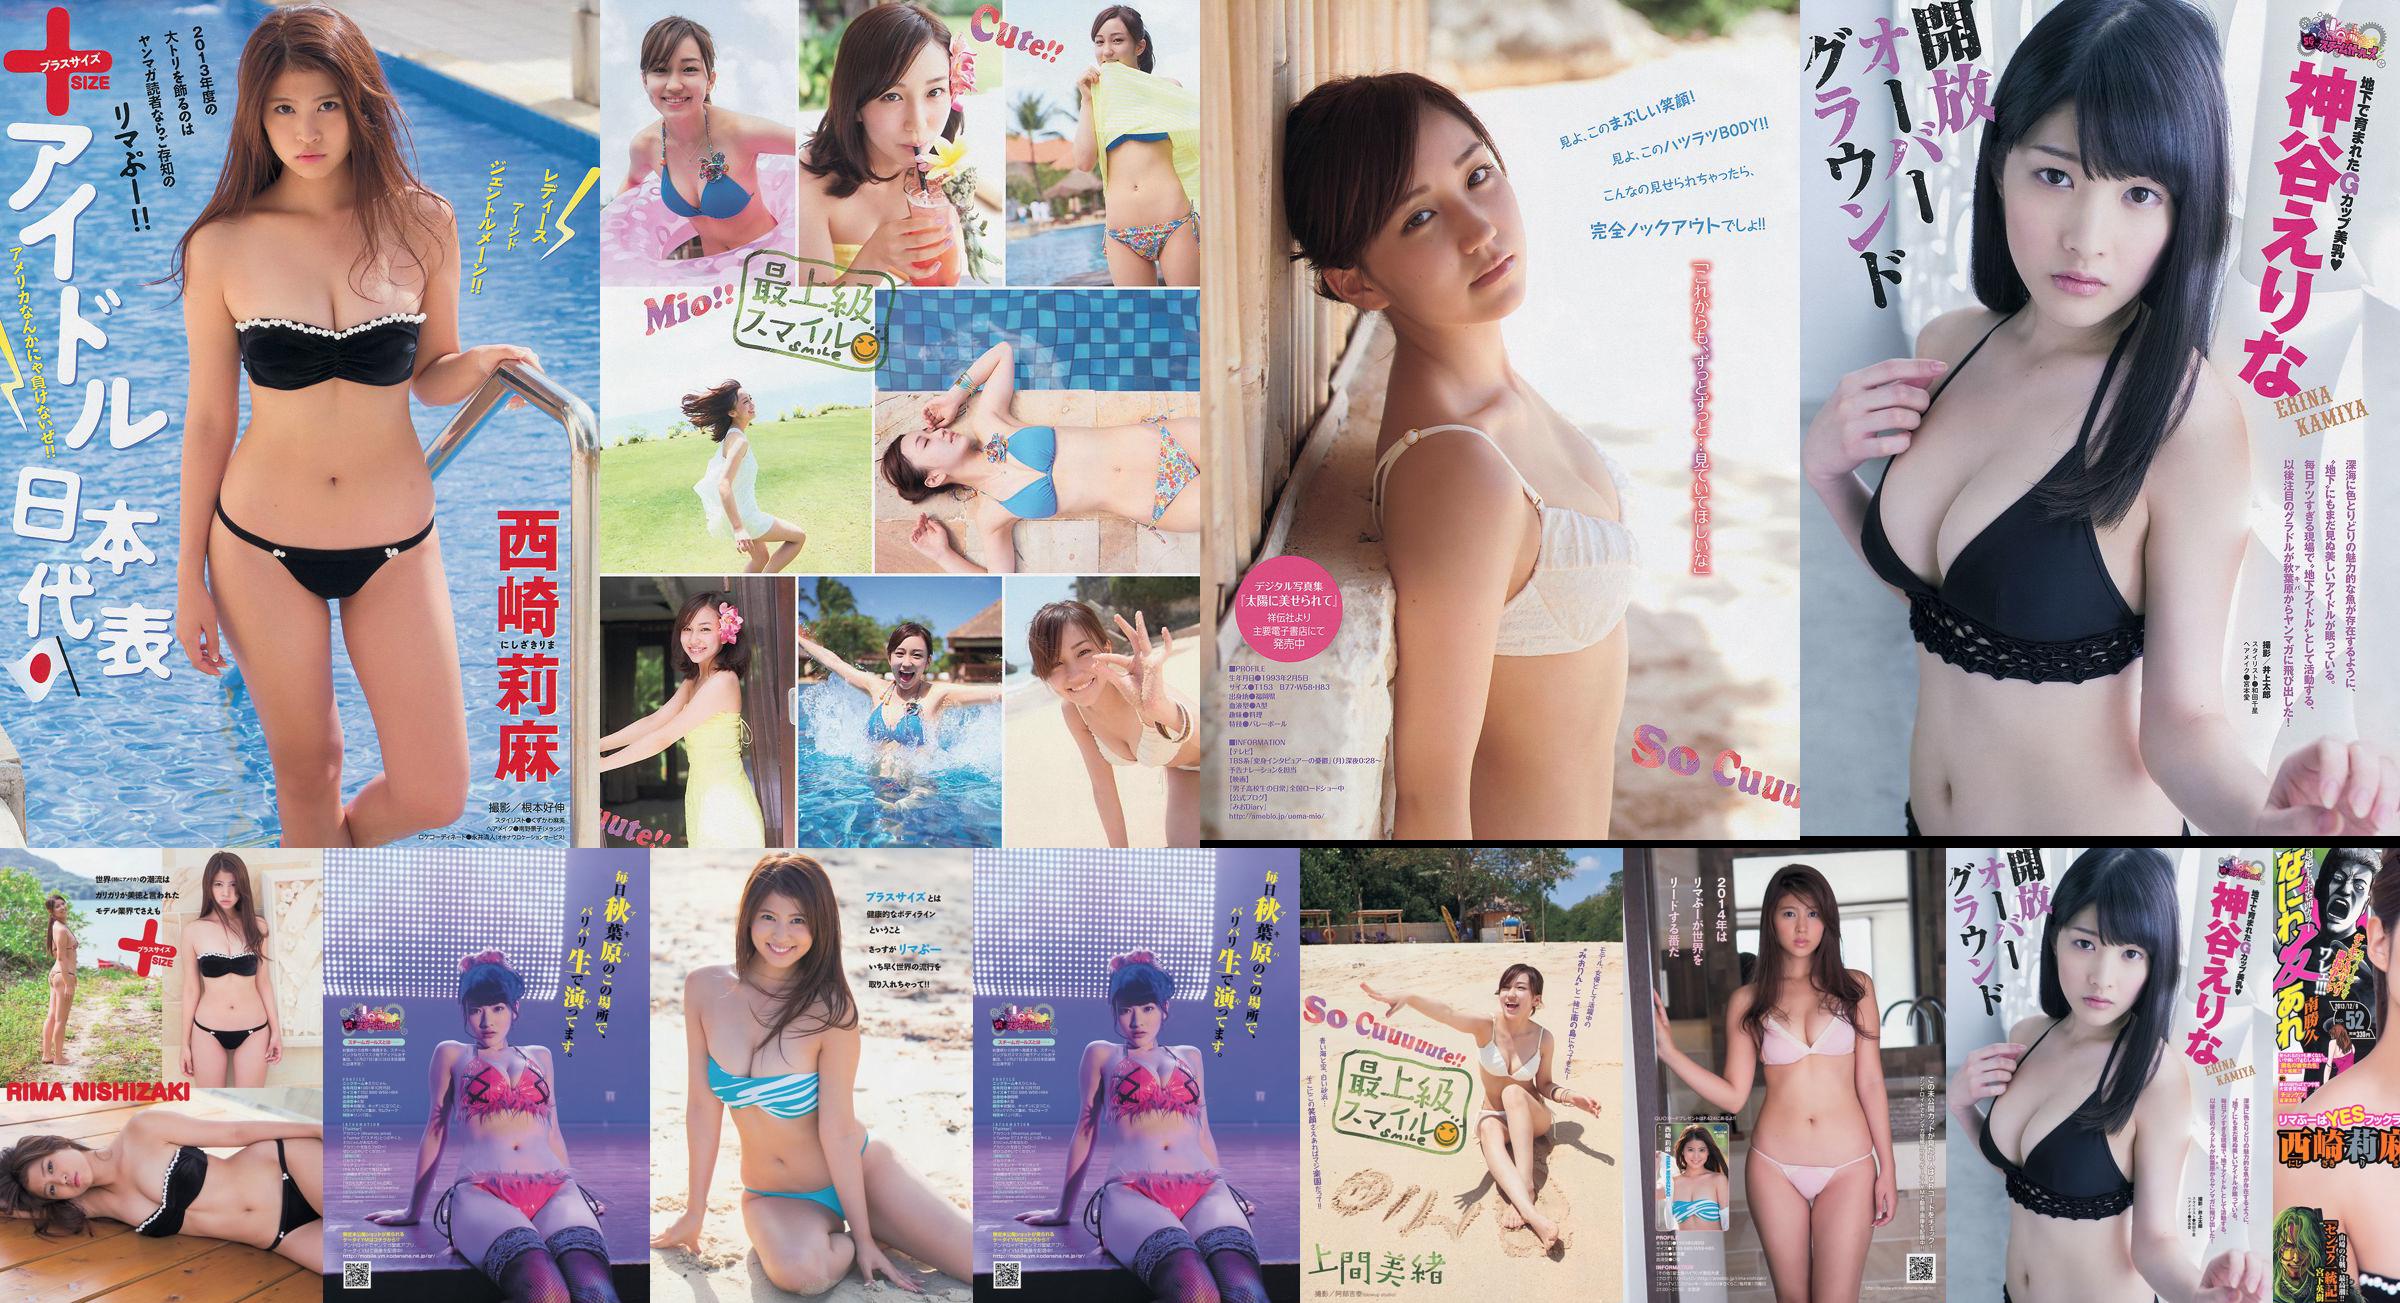 [Junge Zeitschrift] Rima Nishizaki Mio Uema Erina Kamiya 2013 Nr. 52 Foto Moshi No.2bd9ad Seite 1